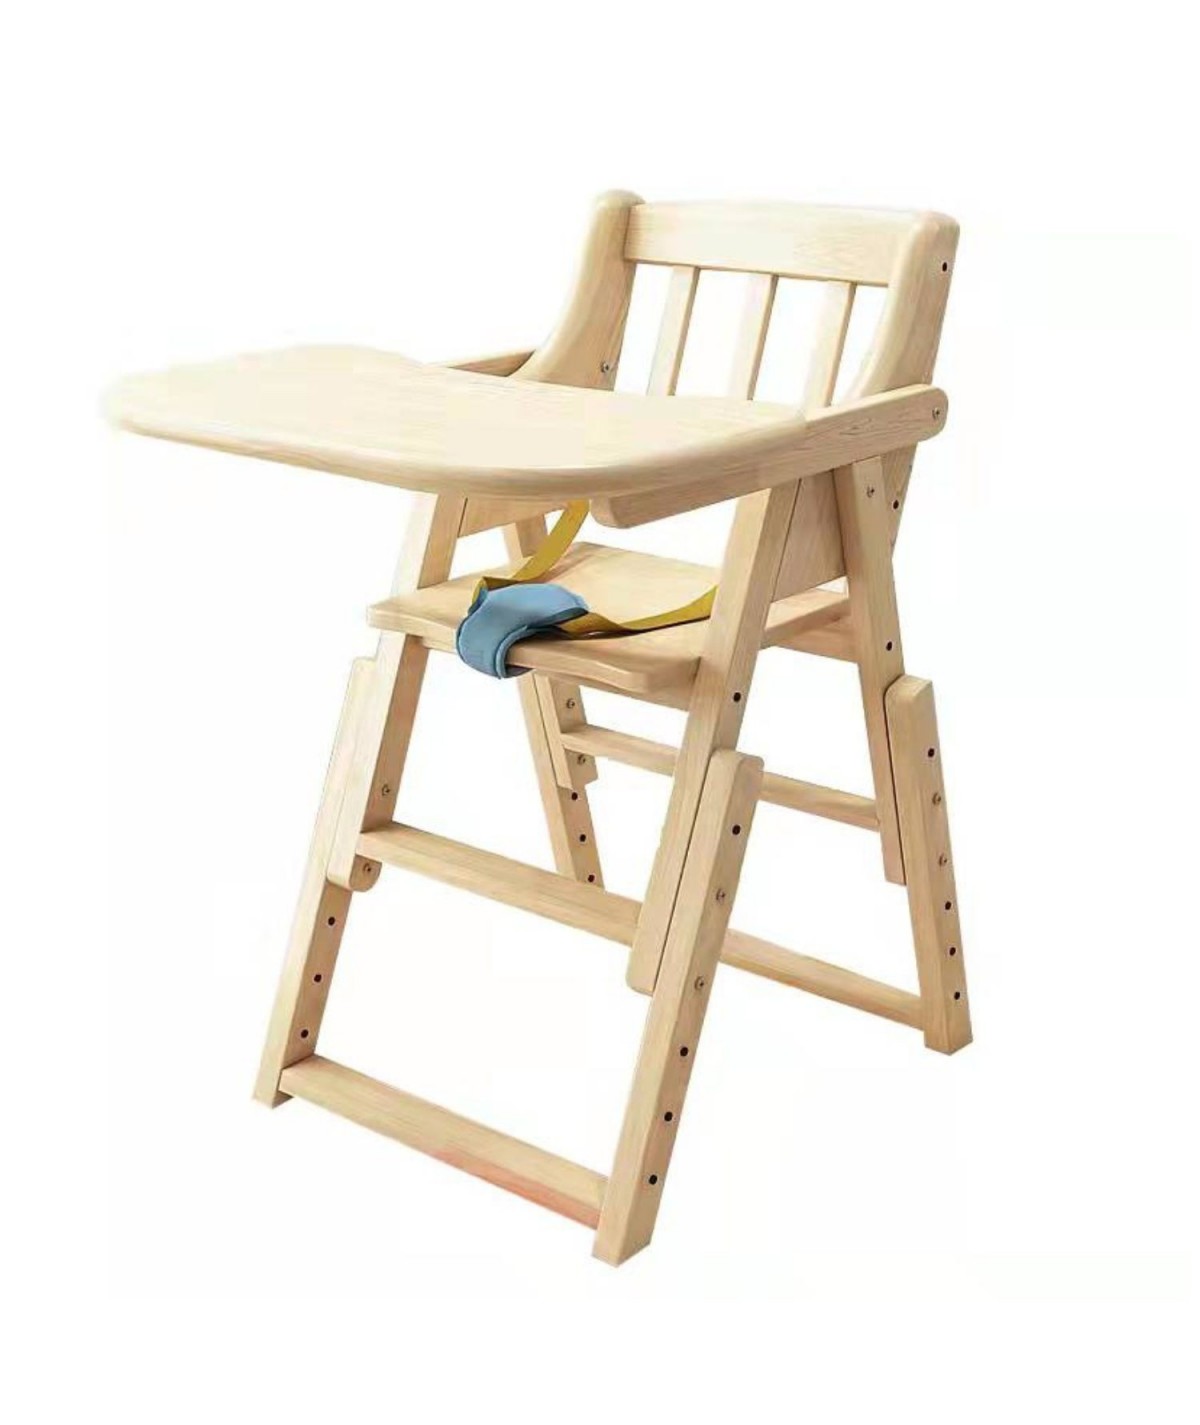 Chaise haute en bois pliable pour bébé teinte naturel Taille 40x50x80